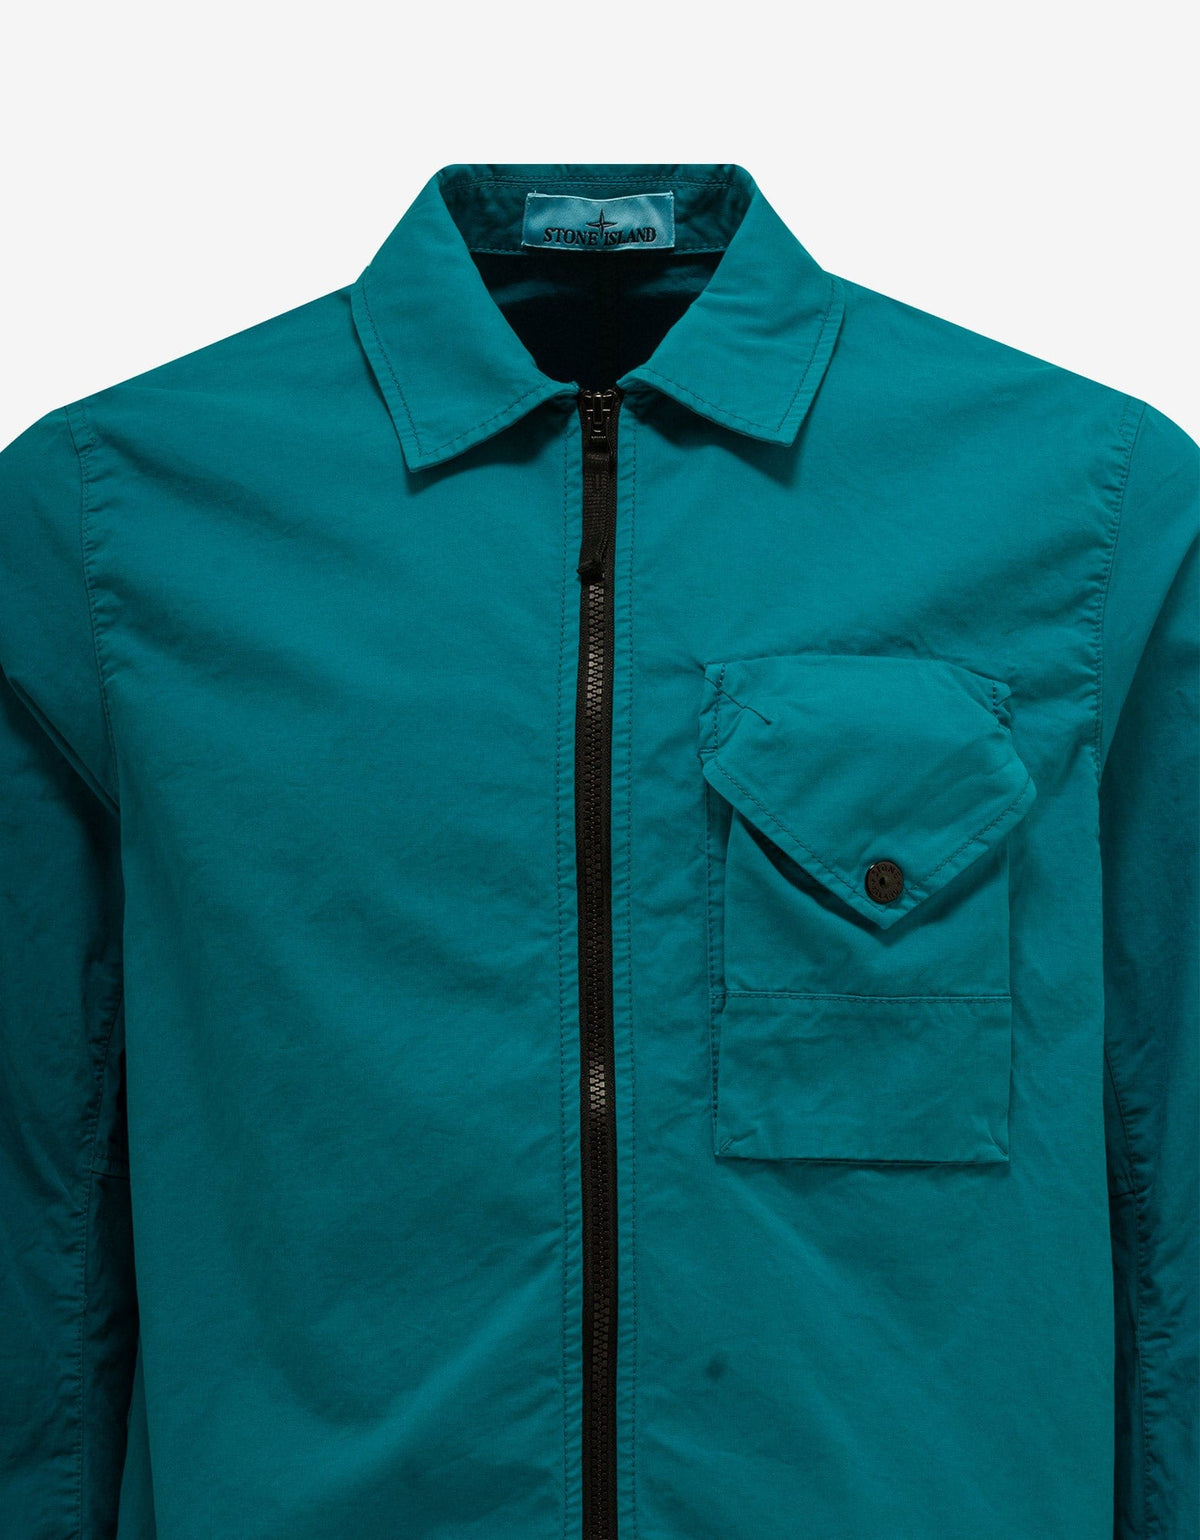 Stone Island Turquoise Blue Garment Dyed Overshirt